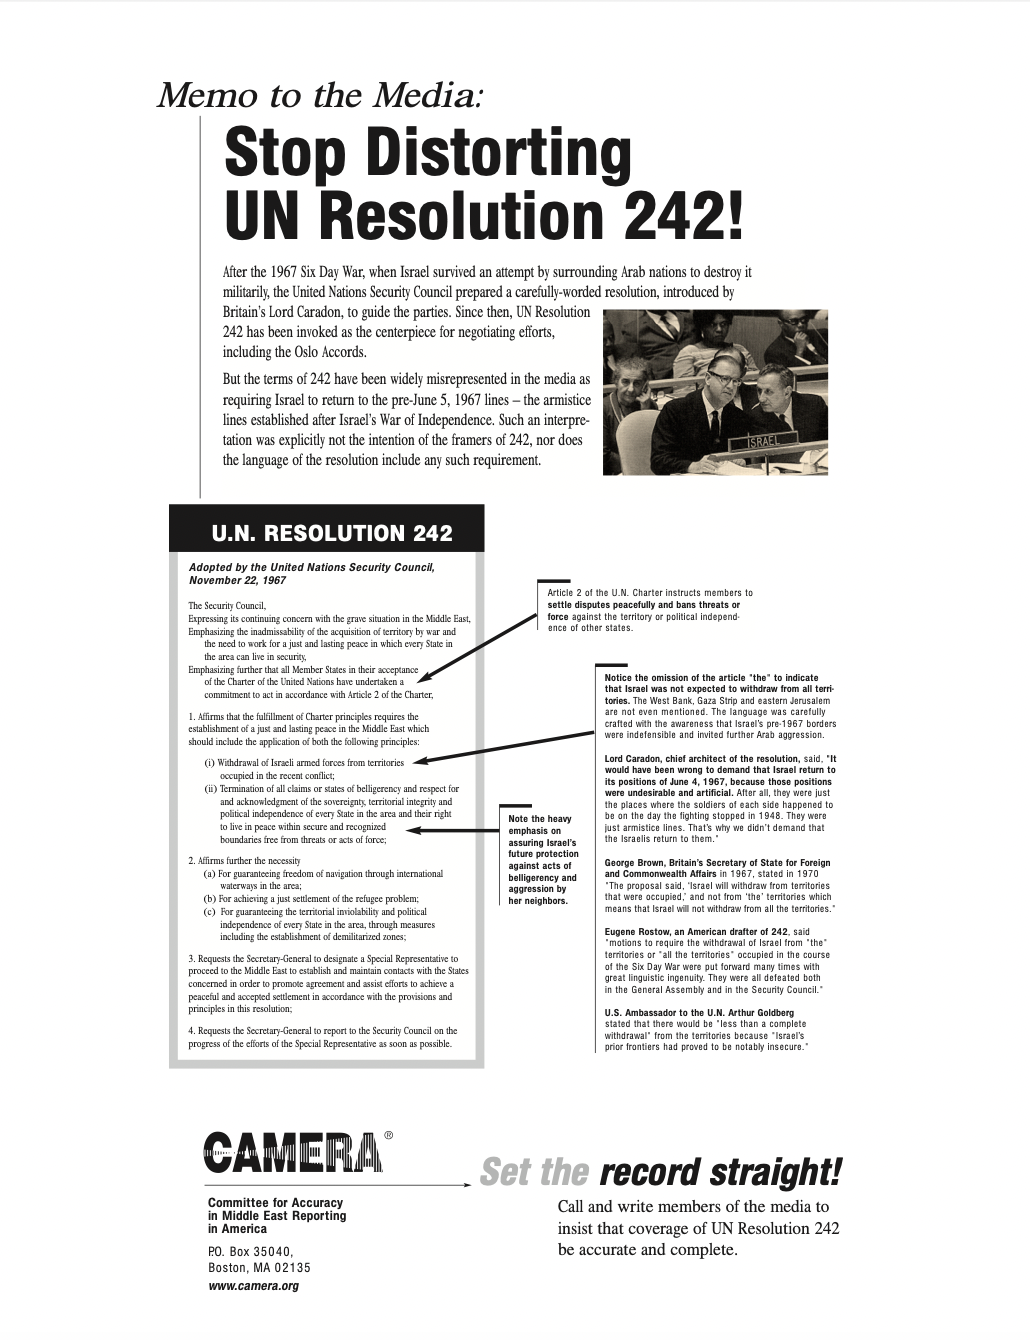 الإعلان الذي نشرته منظمة كاميرا في أحد أعداد ذا نيويورك تايمز - موقع منظمة كاميرا